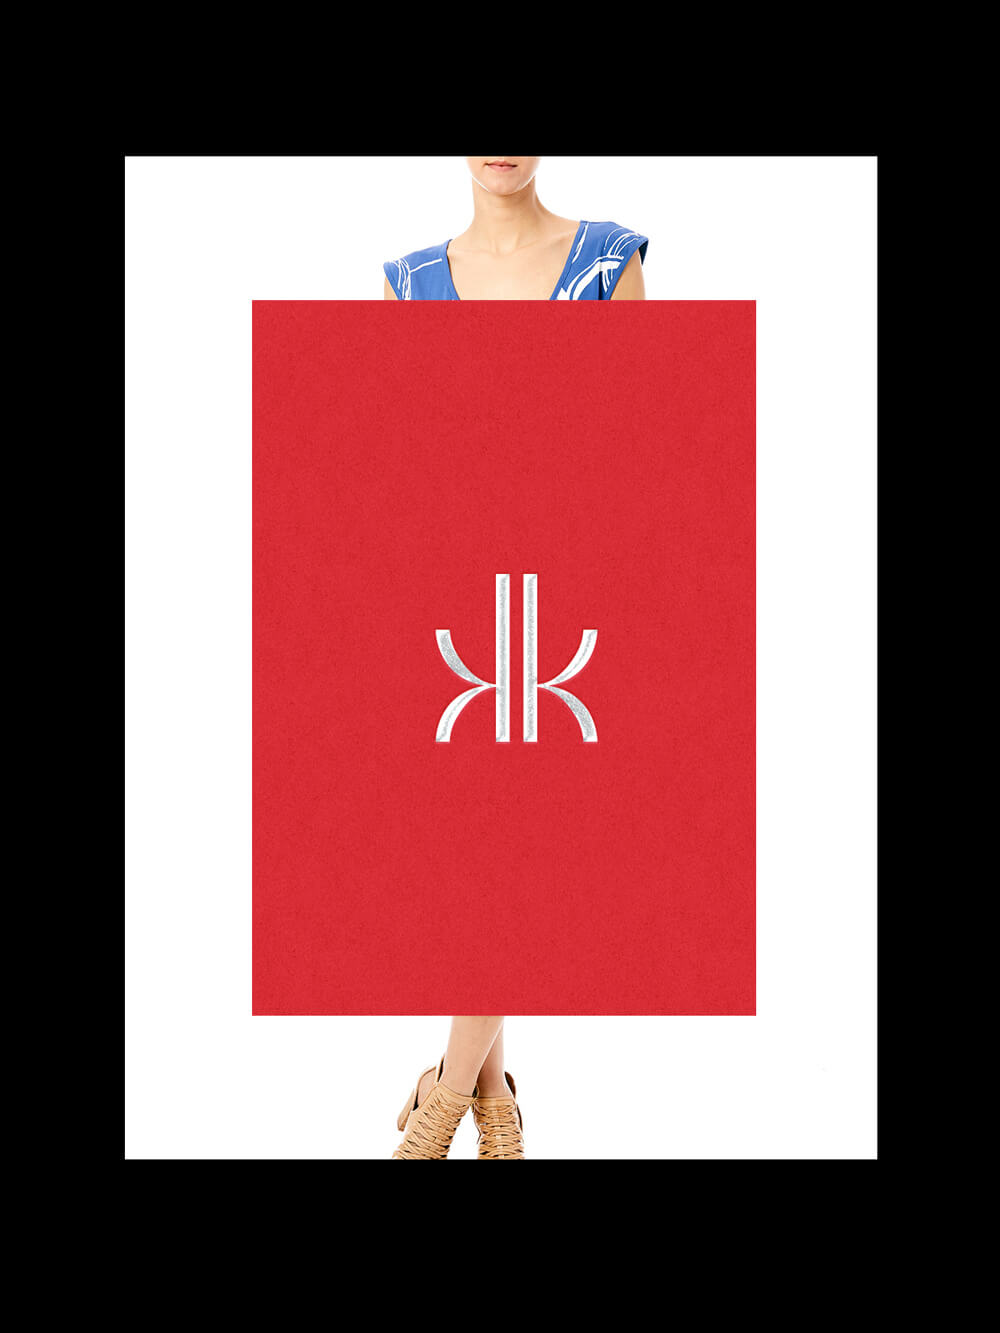 KK-Lettermark-Intro-1000px